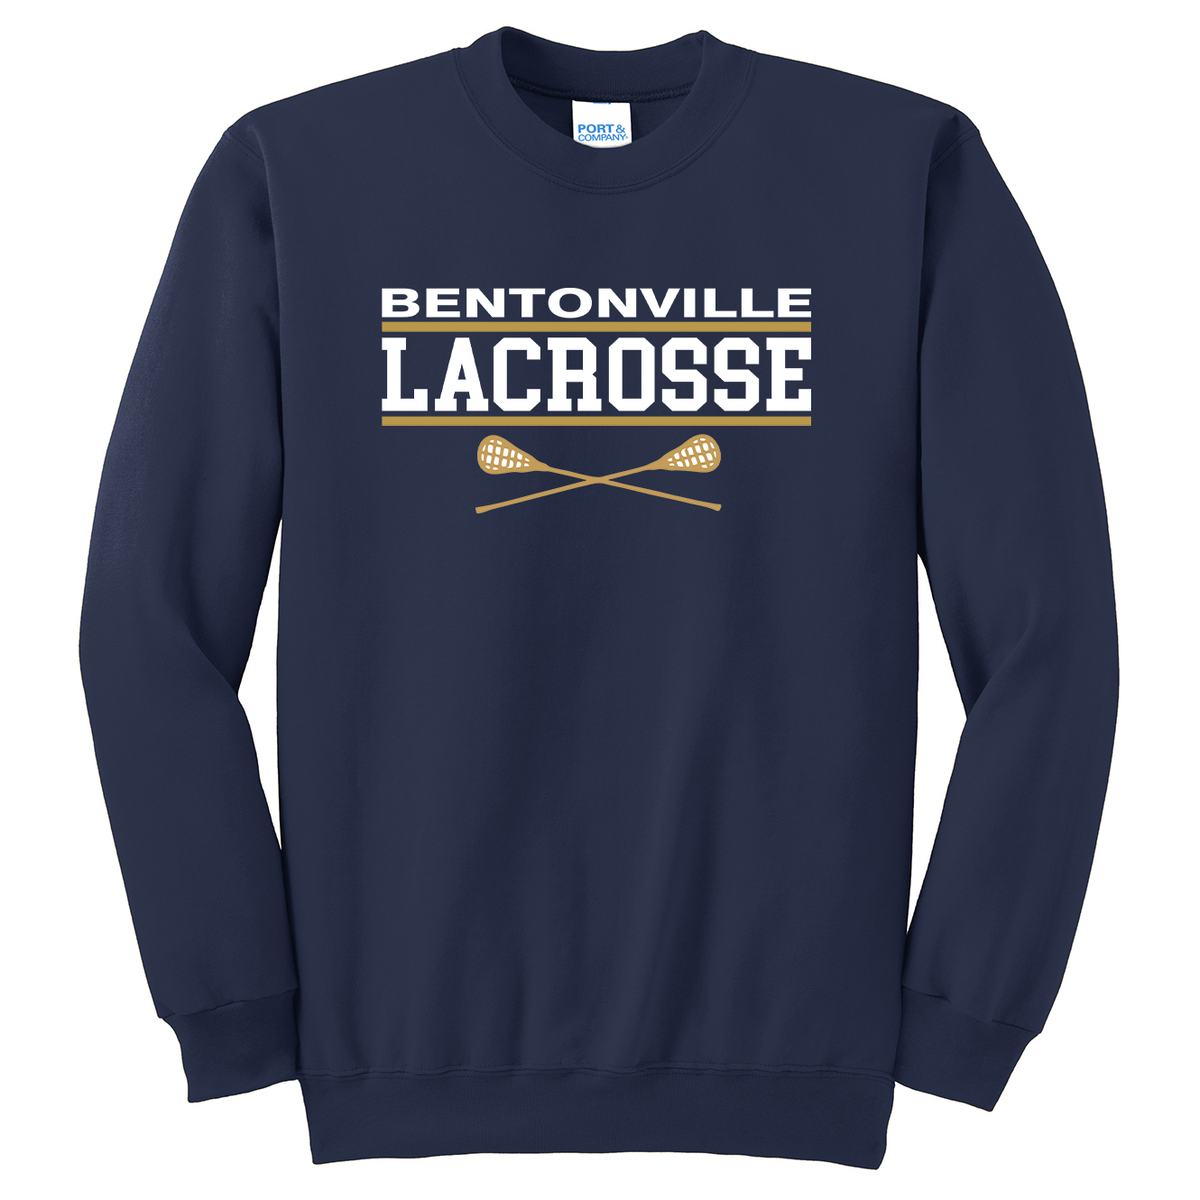 Bentonville Lacrosse Crew Neck Sweater